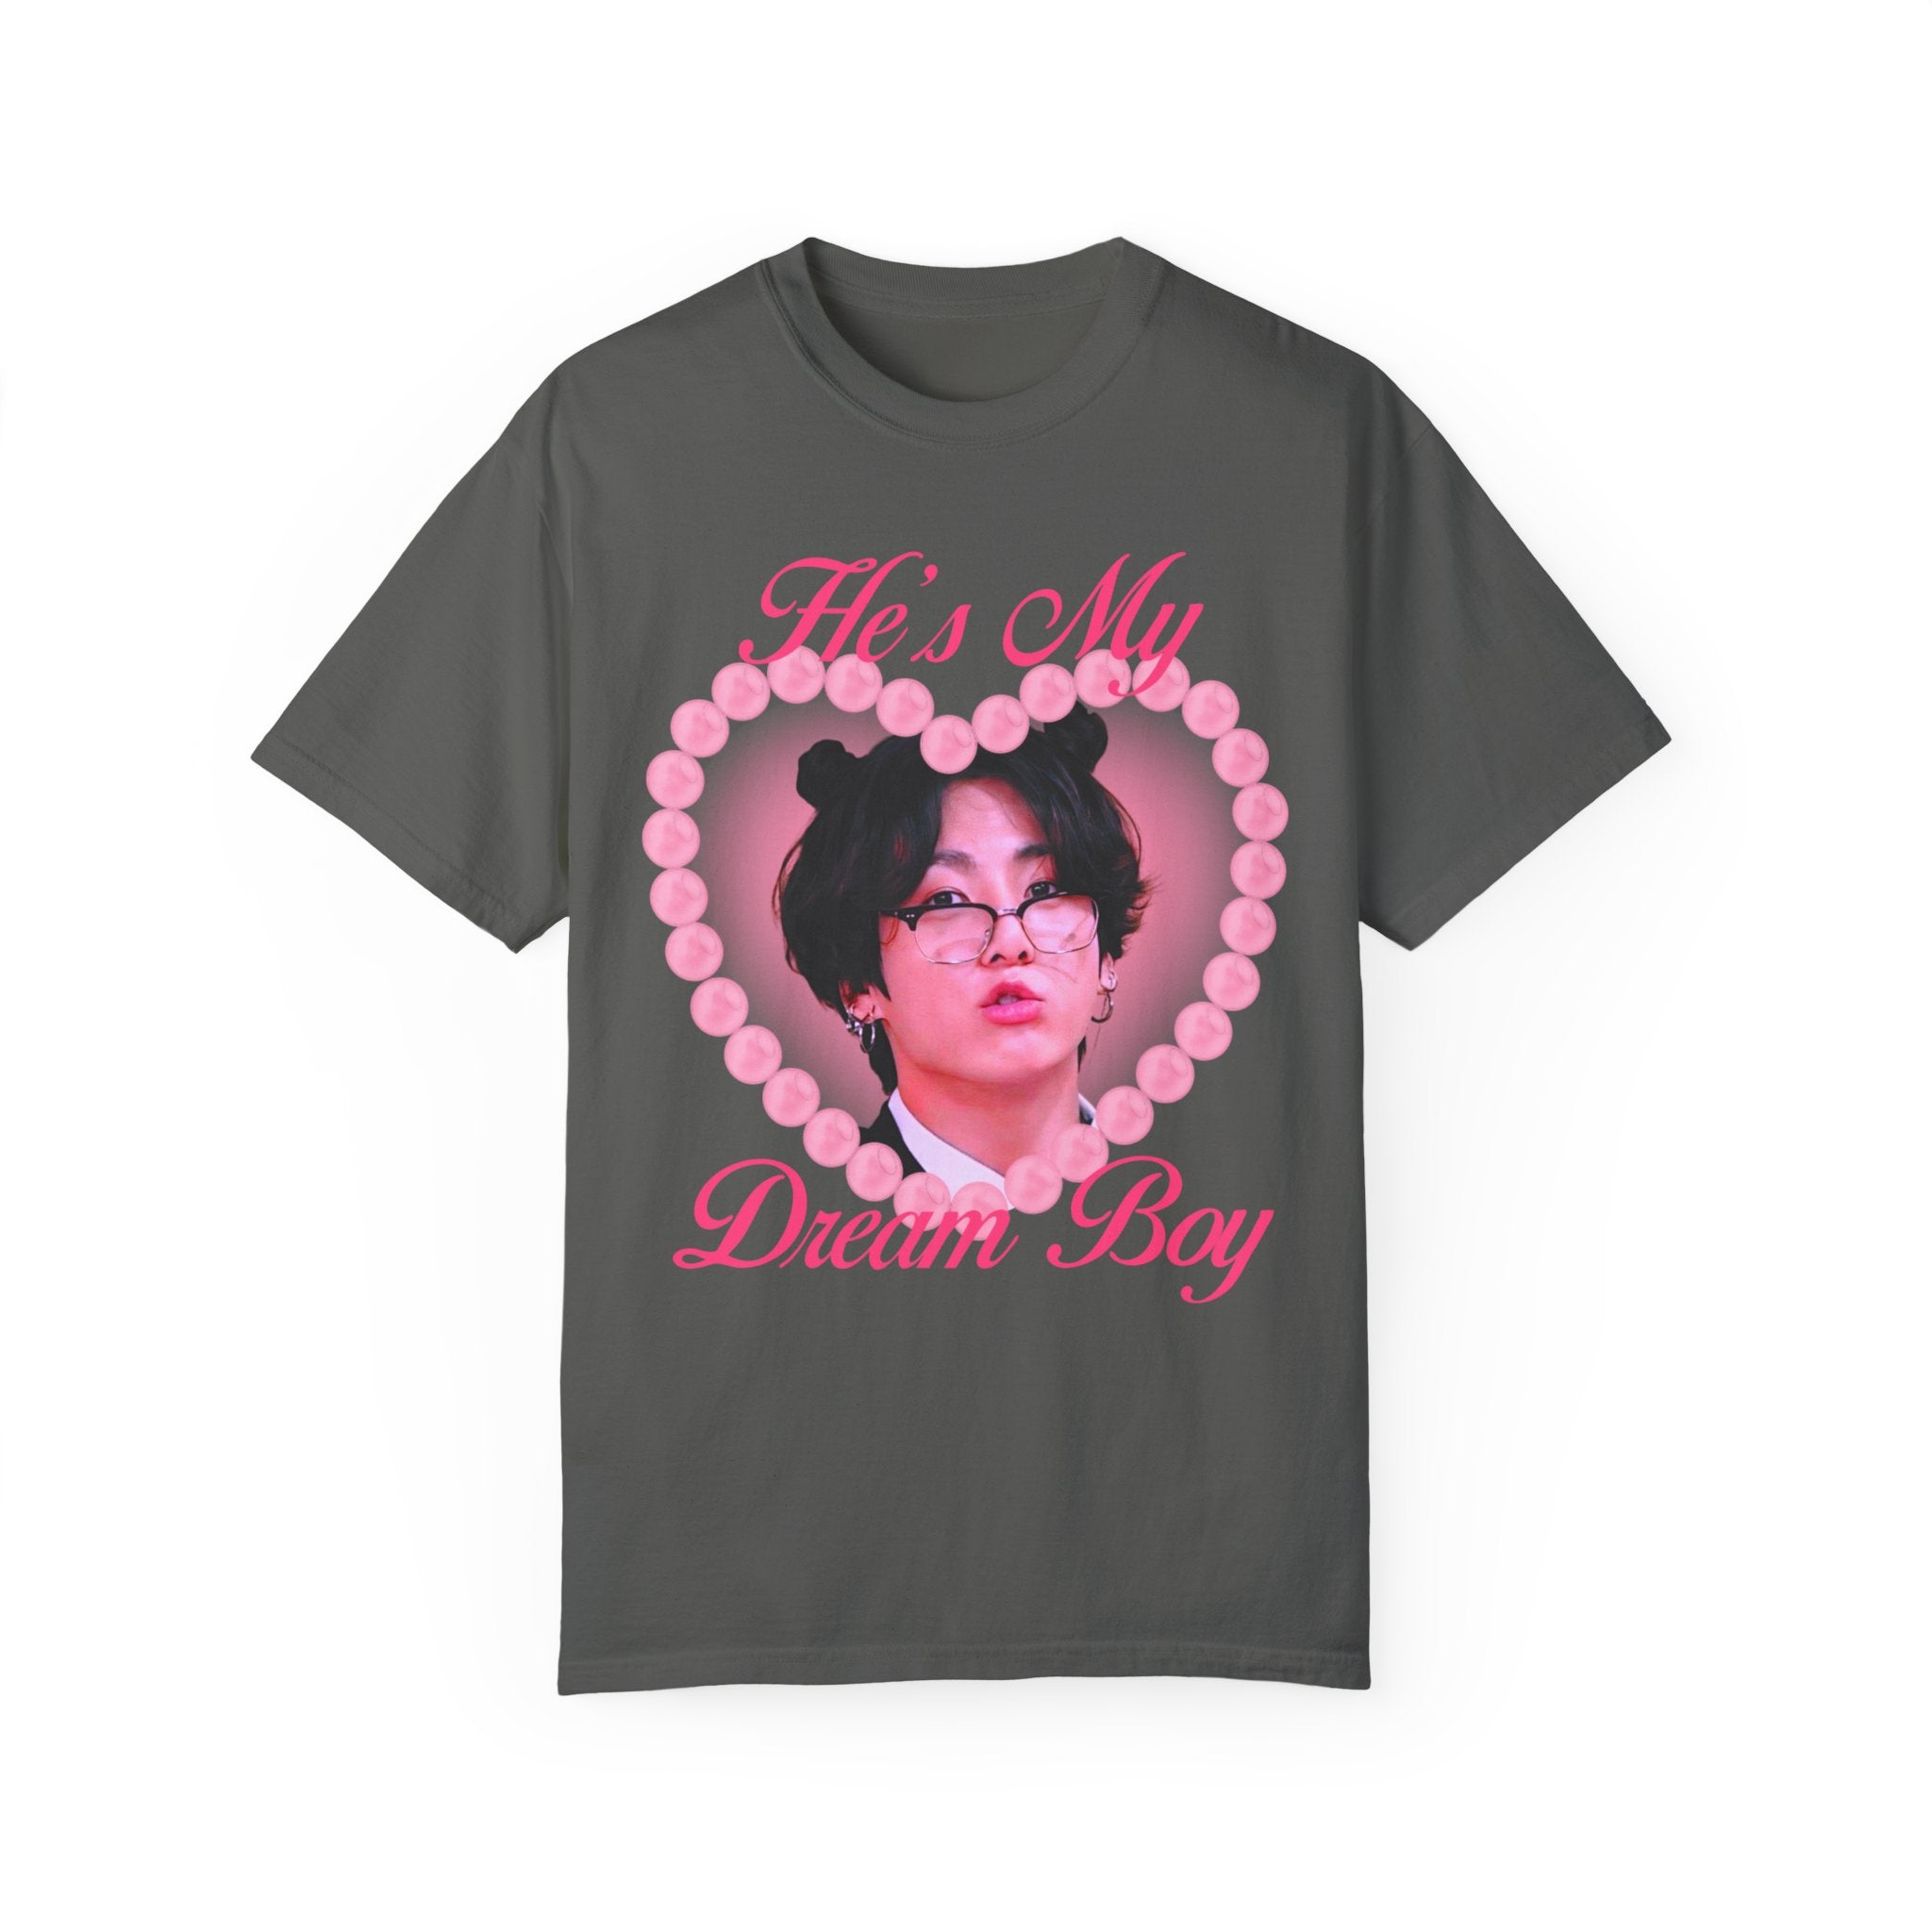 Jungkook Dream Boy Ver 2 Unisex Garment-Dyed T-shirt